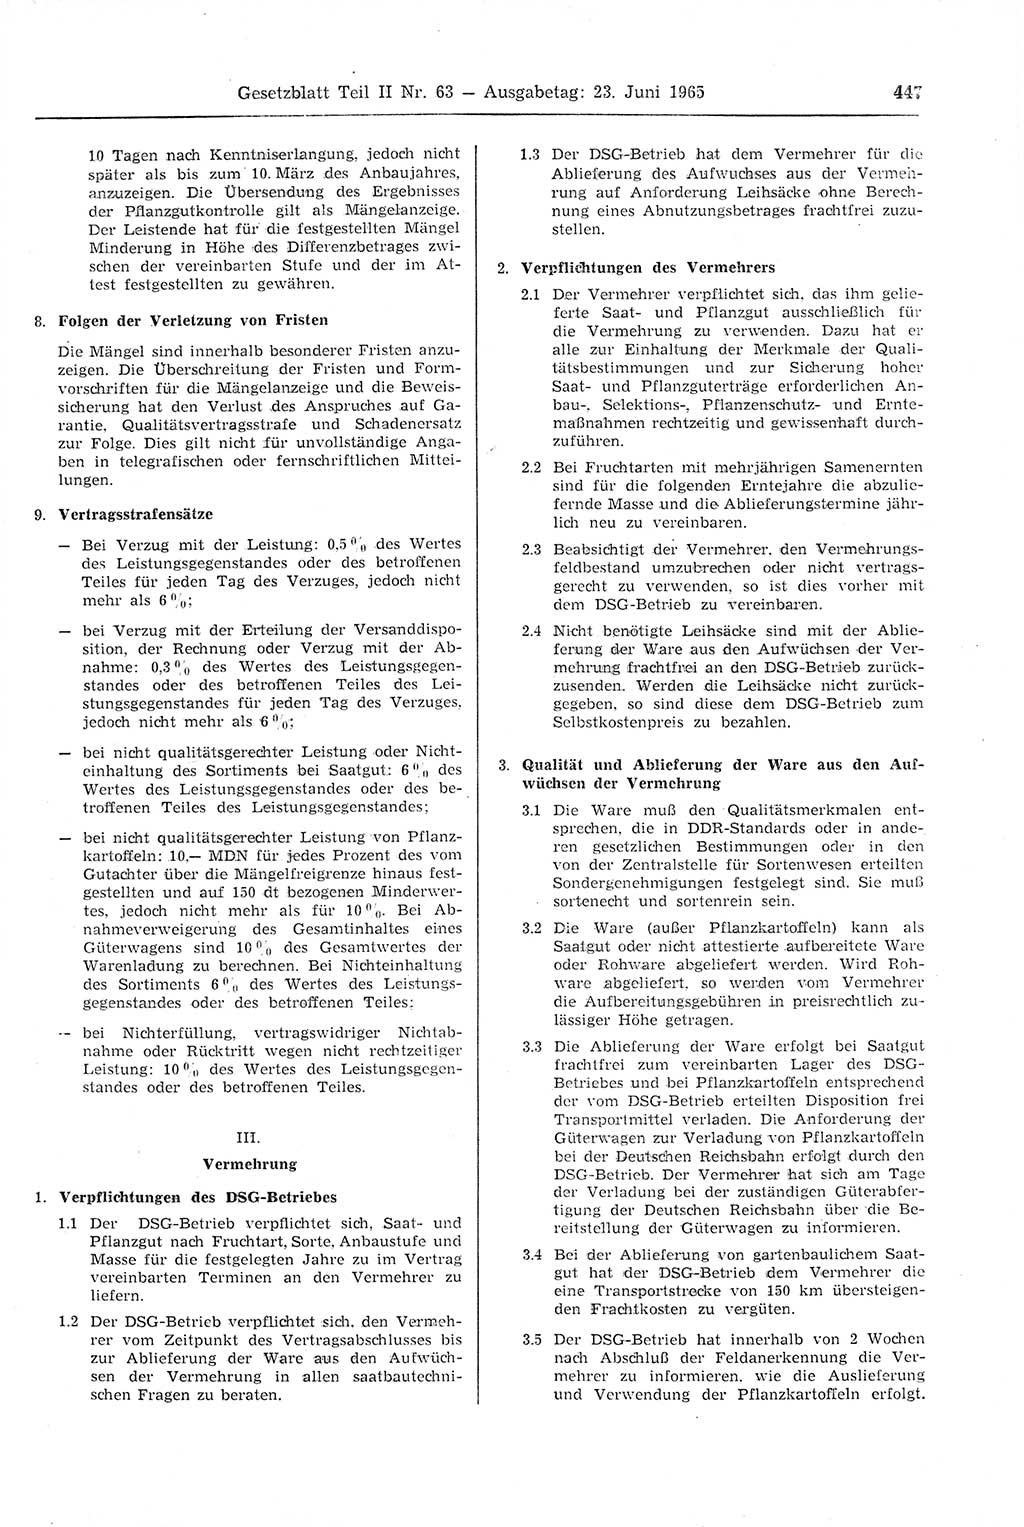 Gesetzblatt (GBl.) der Deutschen Demokratischen Republik (DDR) Teil ⅠⅠ 1965, Seite 447 (GBl. DDR ⅠⅠ 1965, S. 447)